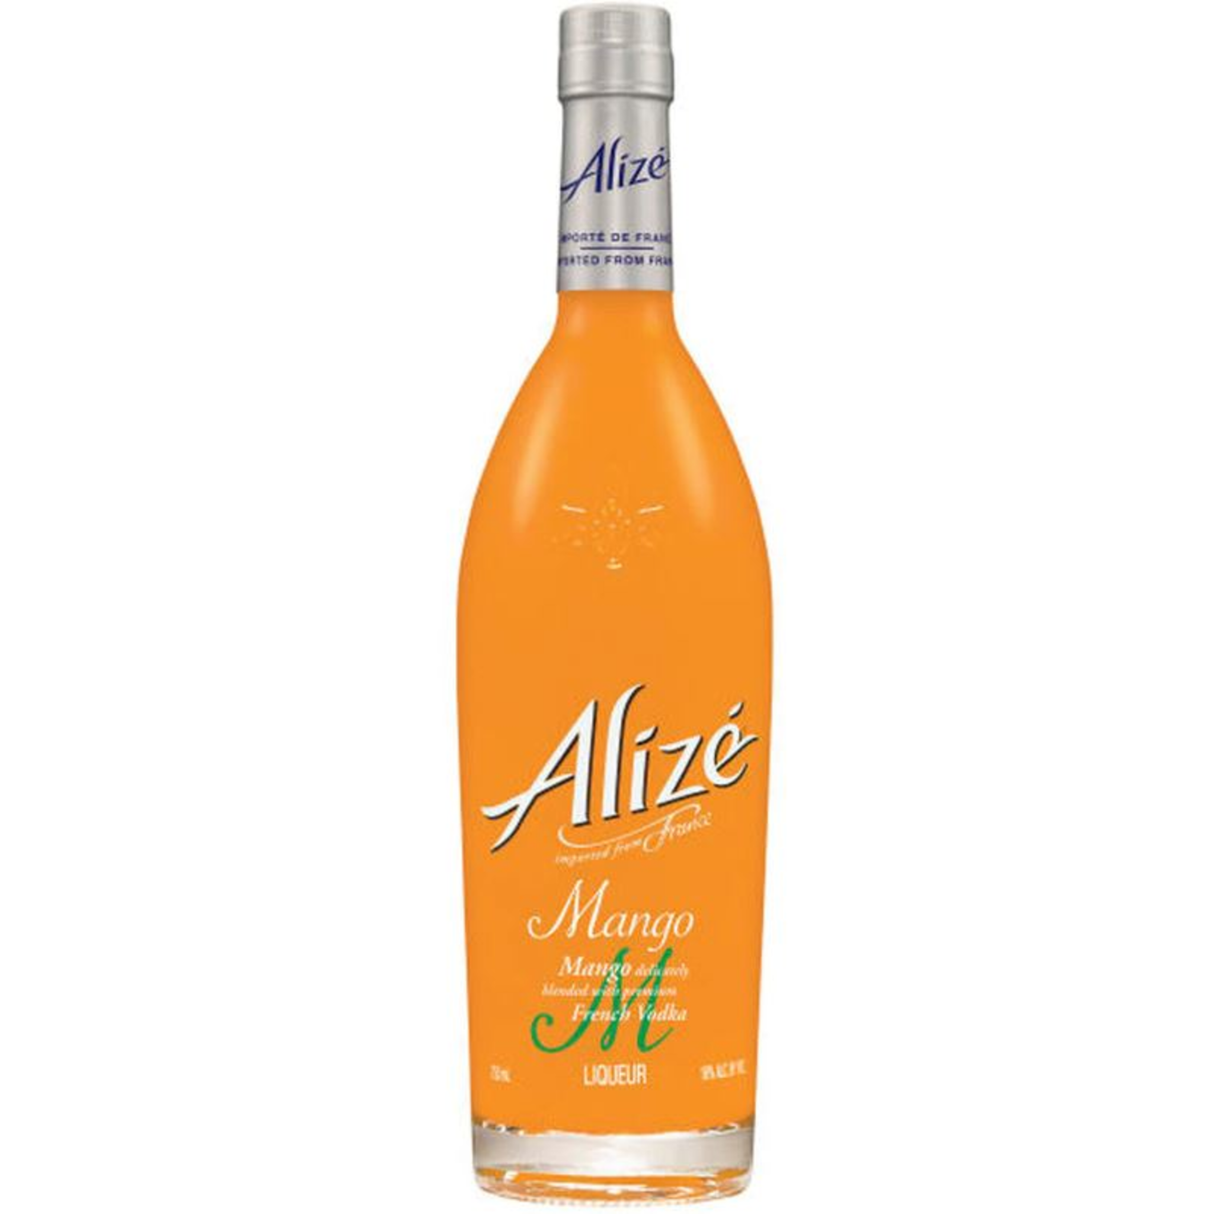 Alize Mango Liqueur/Liquor - Liquor Geeks